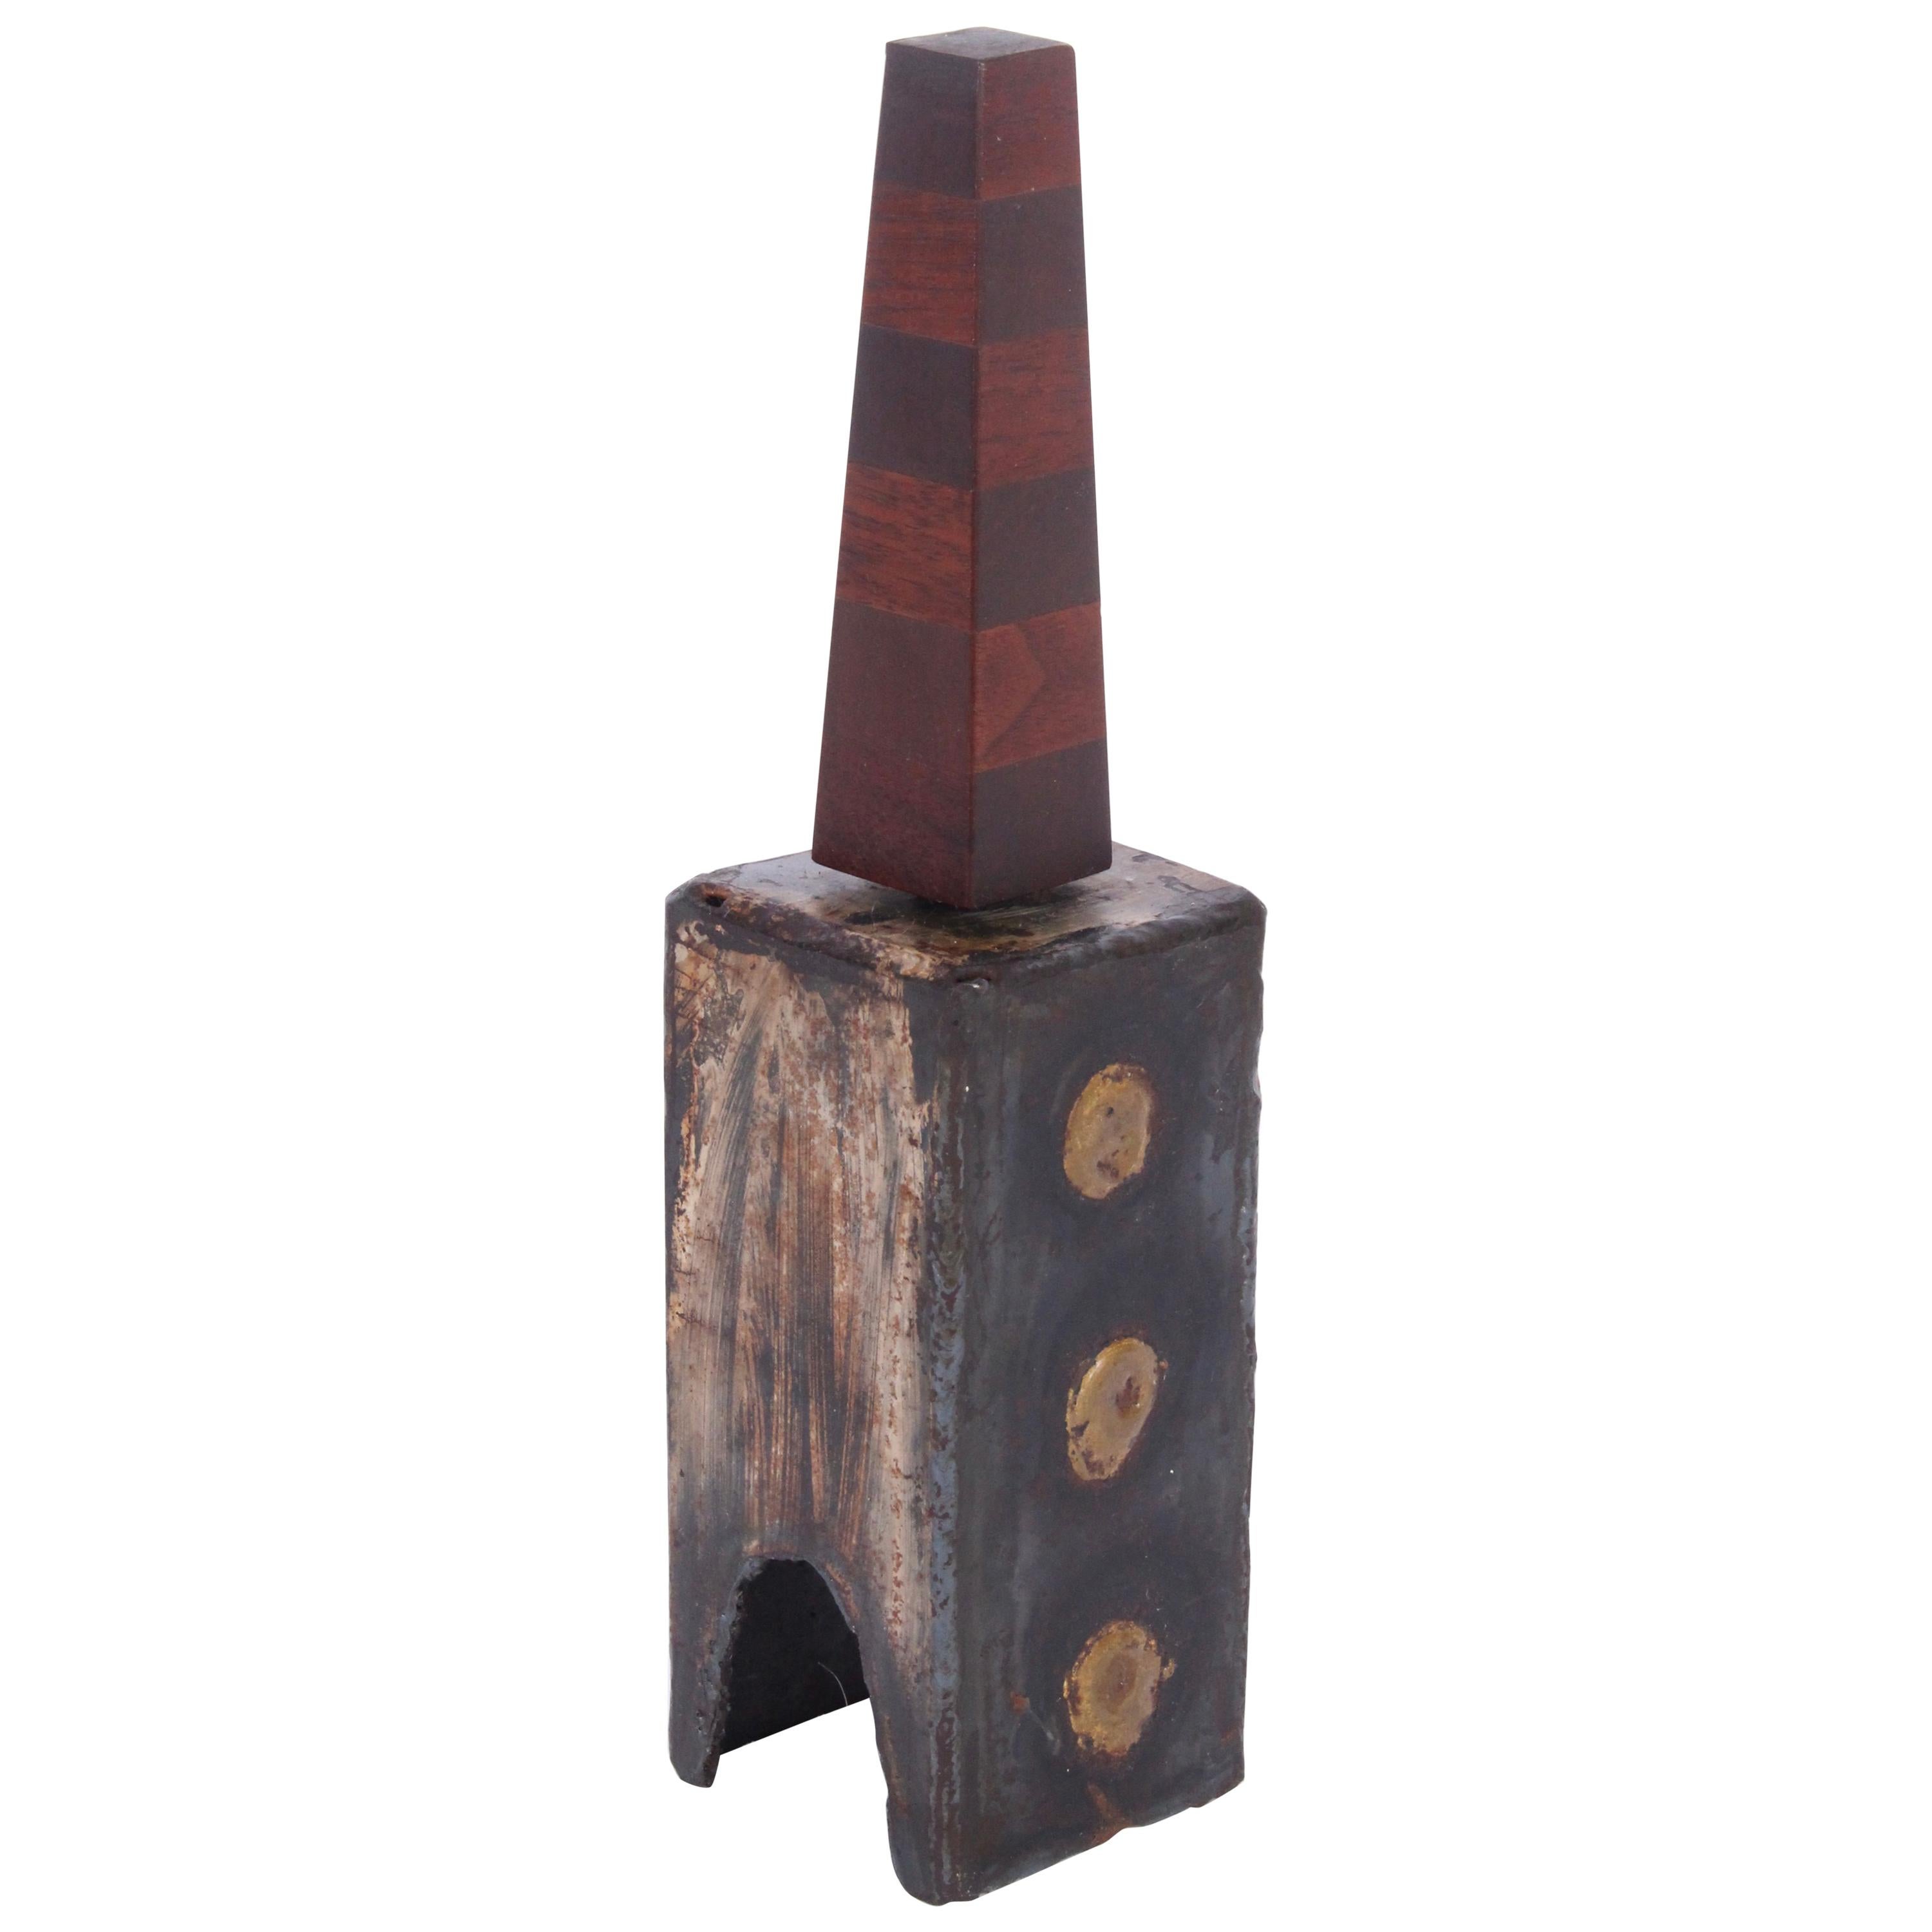 Brutalistische Glocke aus Stahl, Messing und Holz von Paul Evans & Phillip Lloyd Powell, handgefertigt